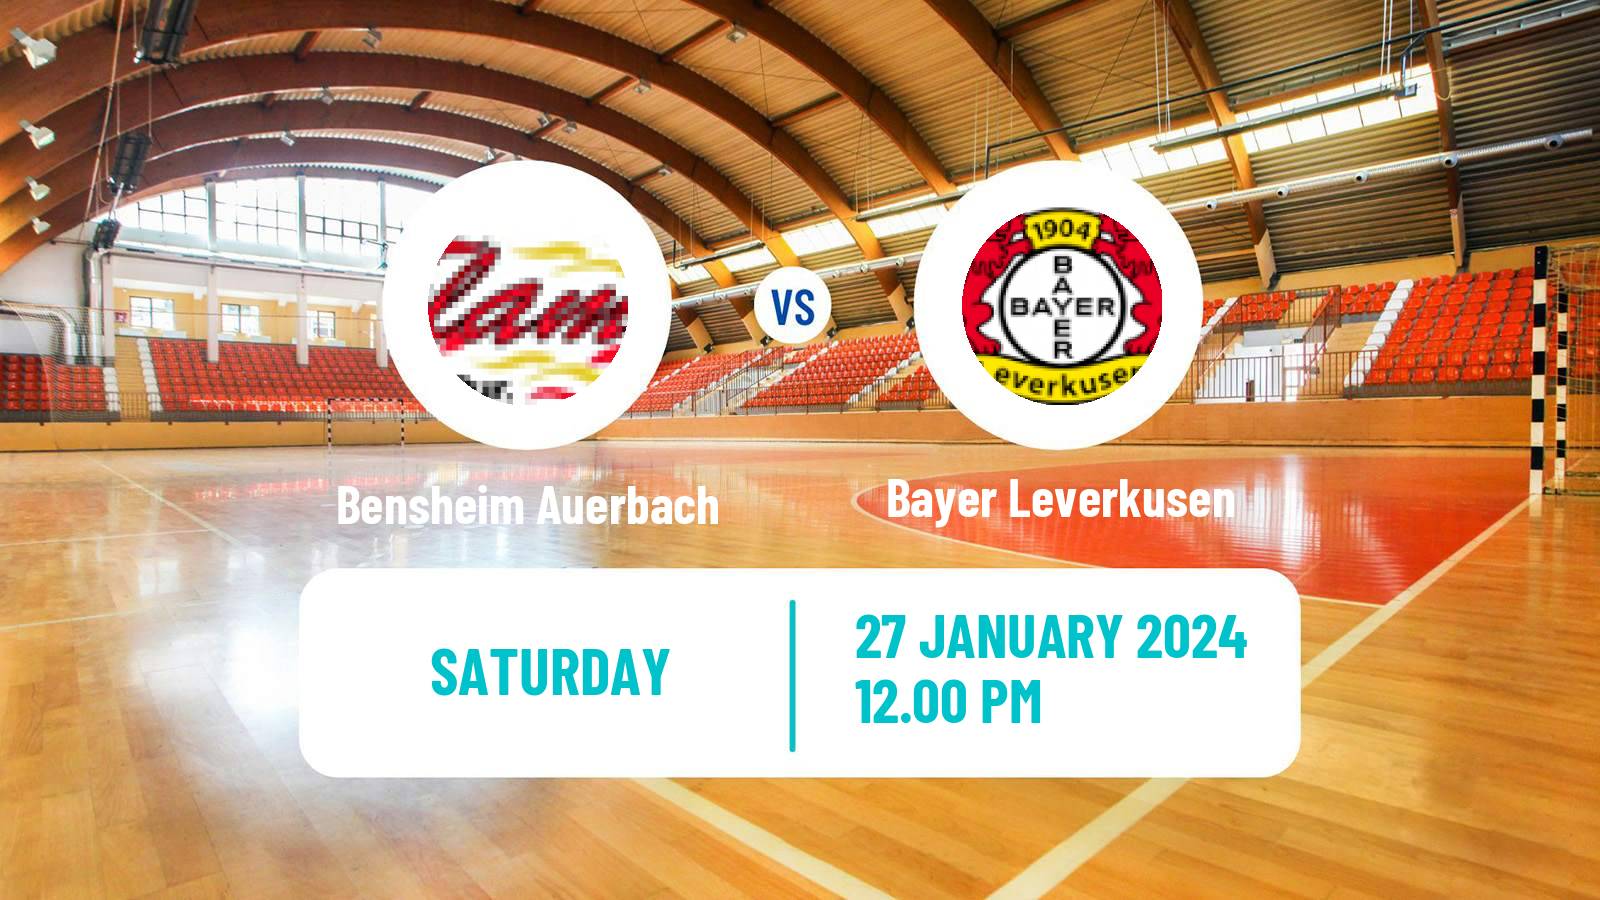 Handball German 1 Bundesliga Handball Women Bensheim Auerbach - Bayer Leverkusen